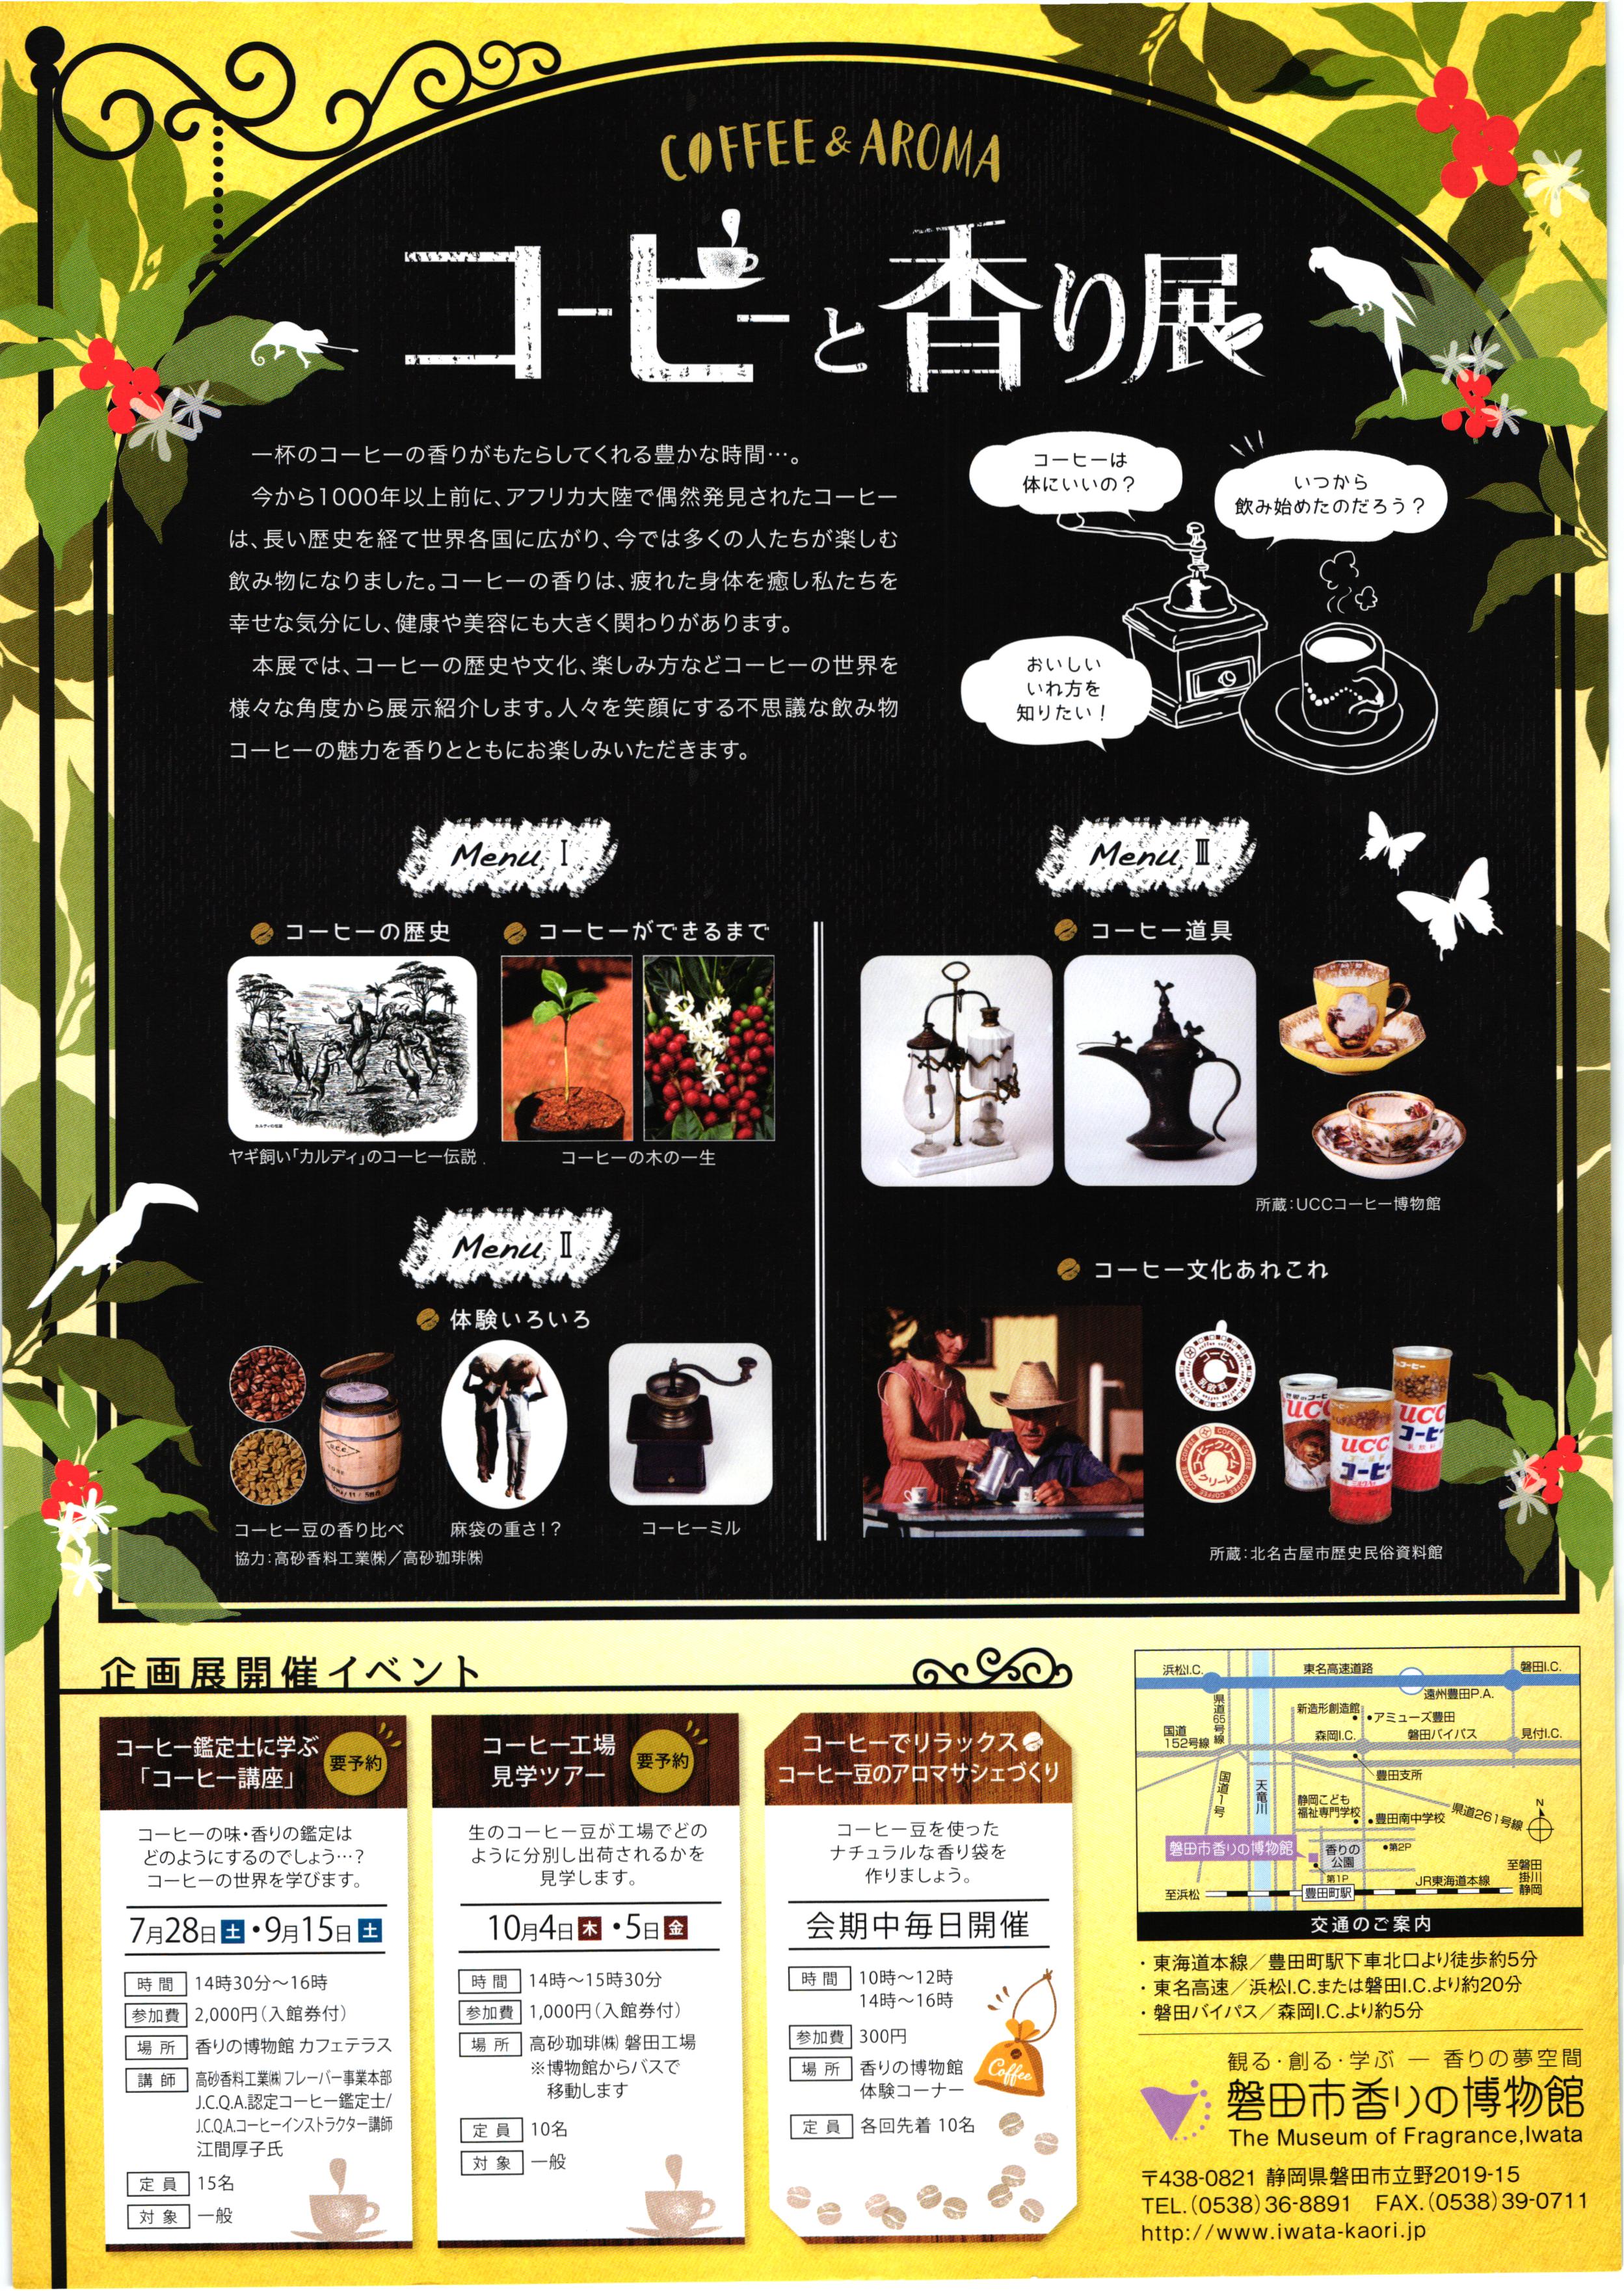  磐田市香りの博物館・夏季企画展「コーヒーと香り展」